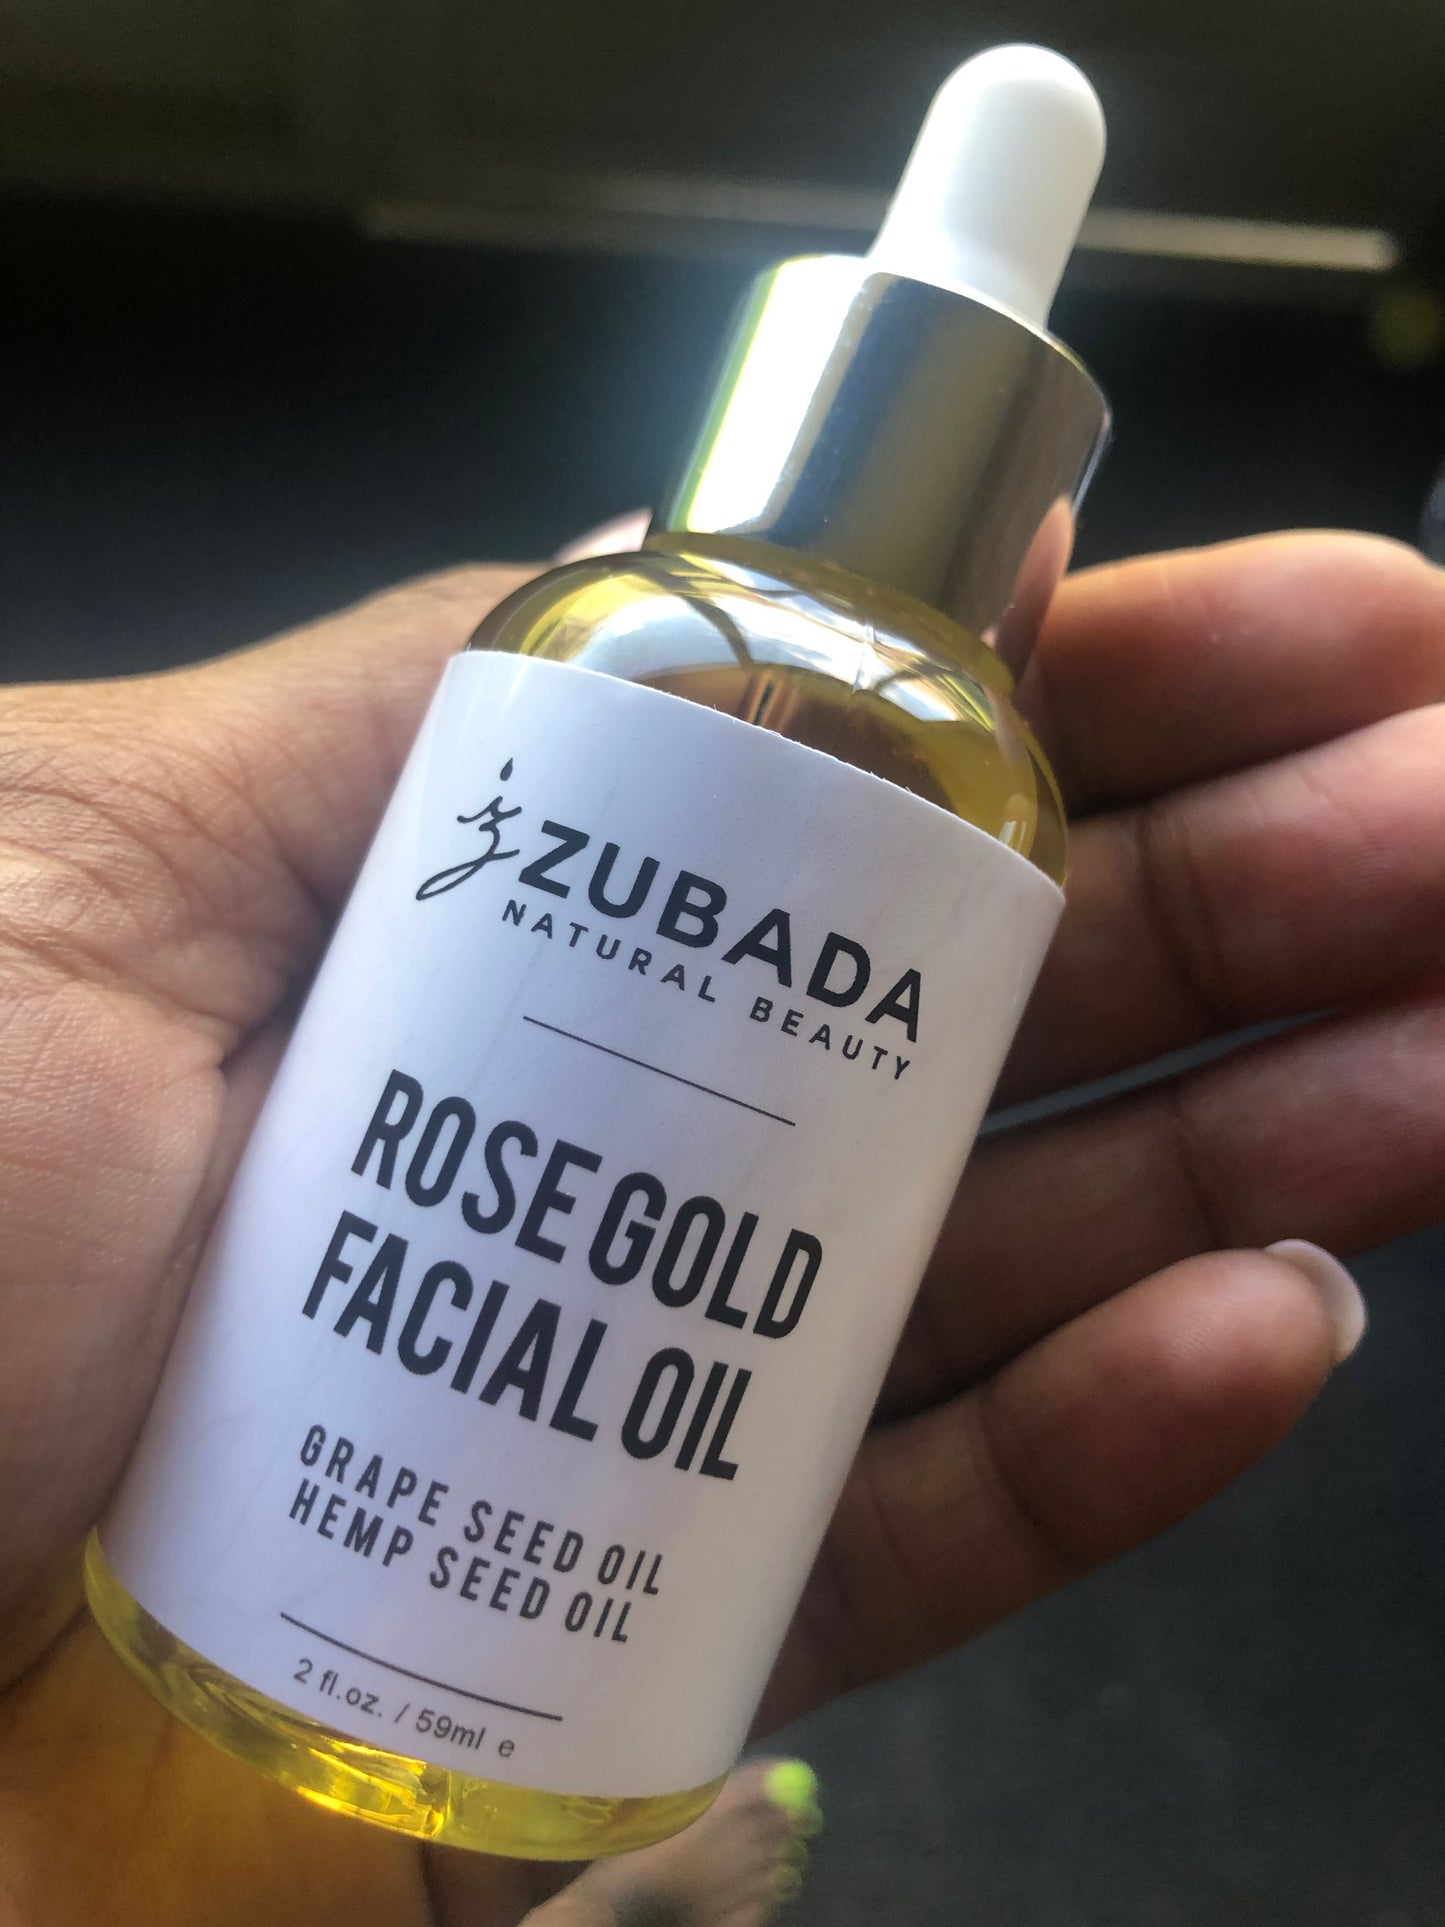 Zubada’s Rose Gold Facial Oil 2oz